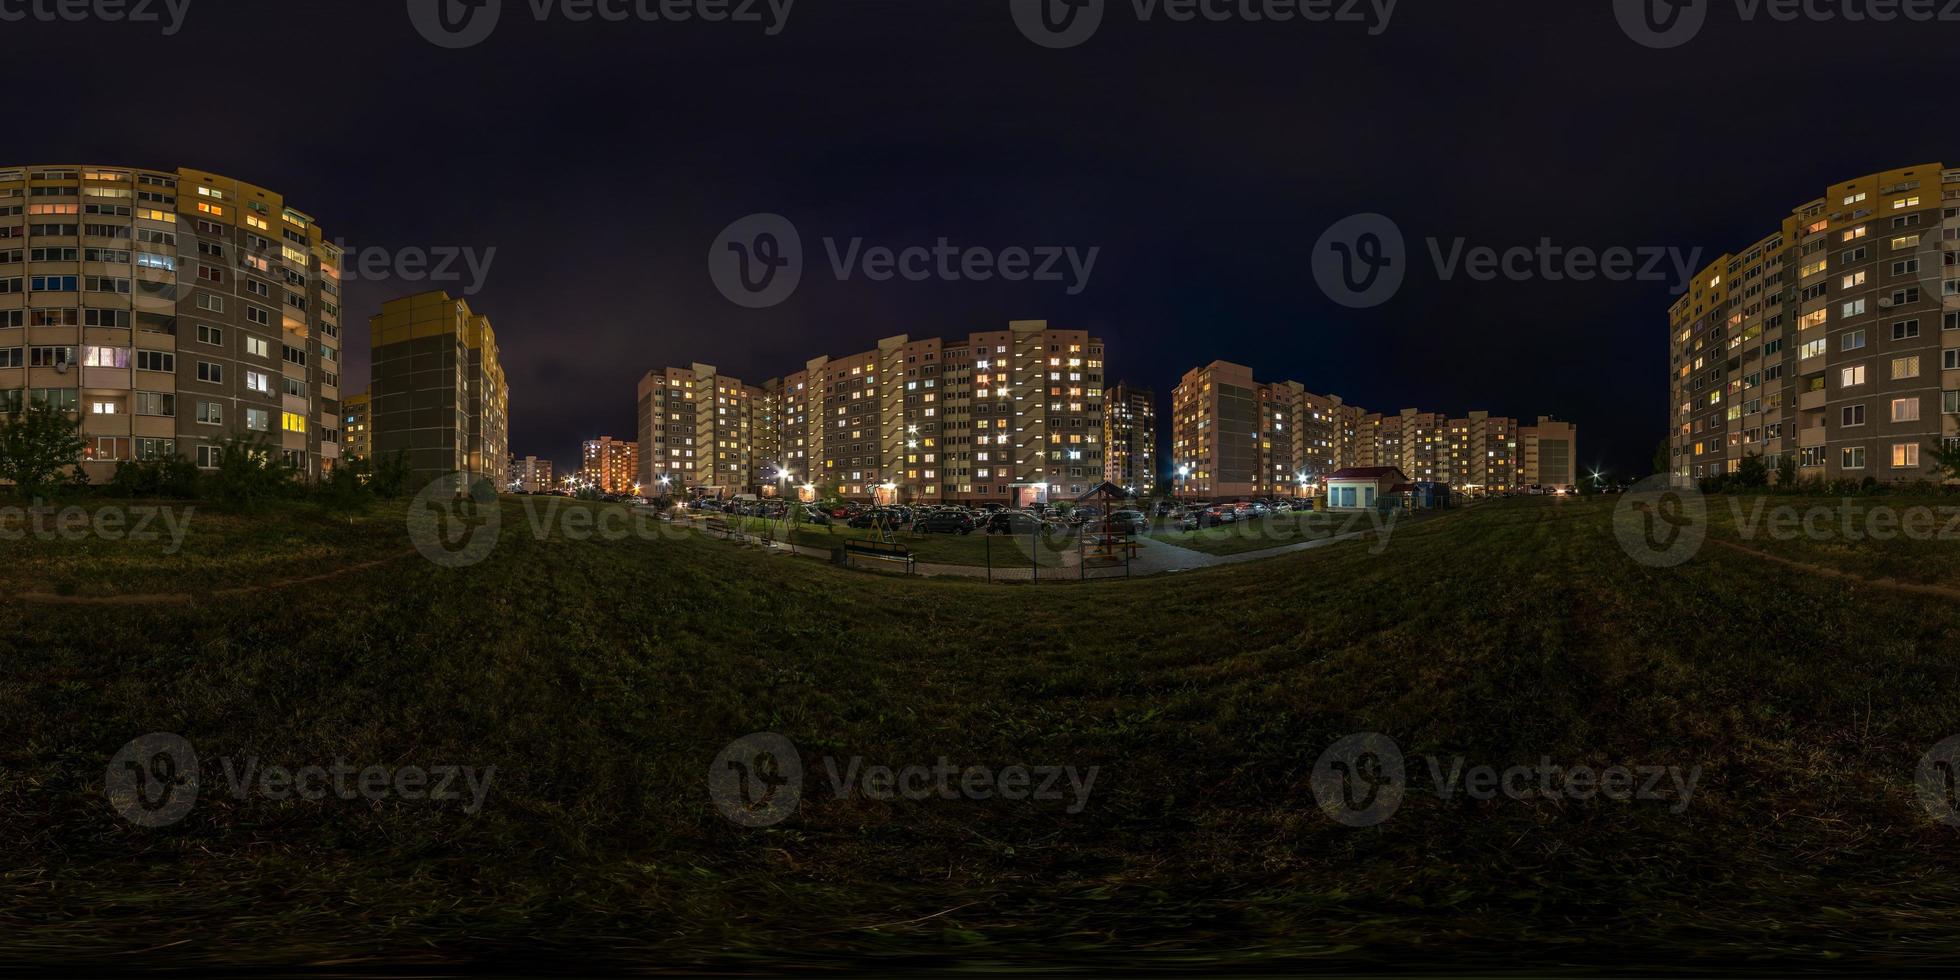 panorama noturno hdri esférico sem costura completo luz de visão de ângulo de 360 graus nas janelas da área de construção de vários andares do bairro residencial de desenvolvimento urbano em projeção equirretangular, conteúdo de vr foto